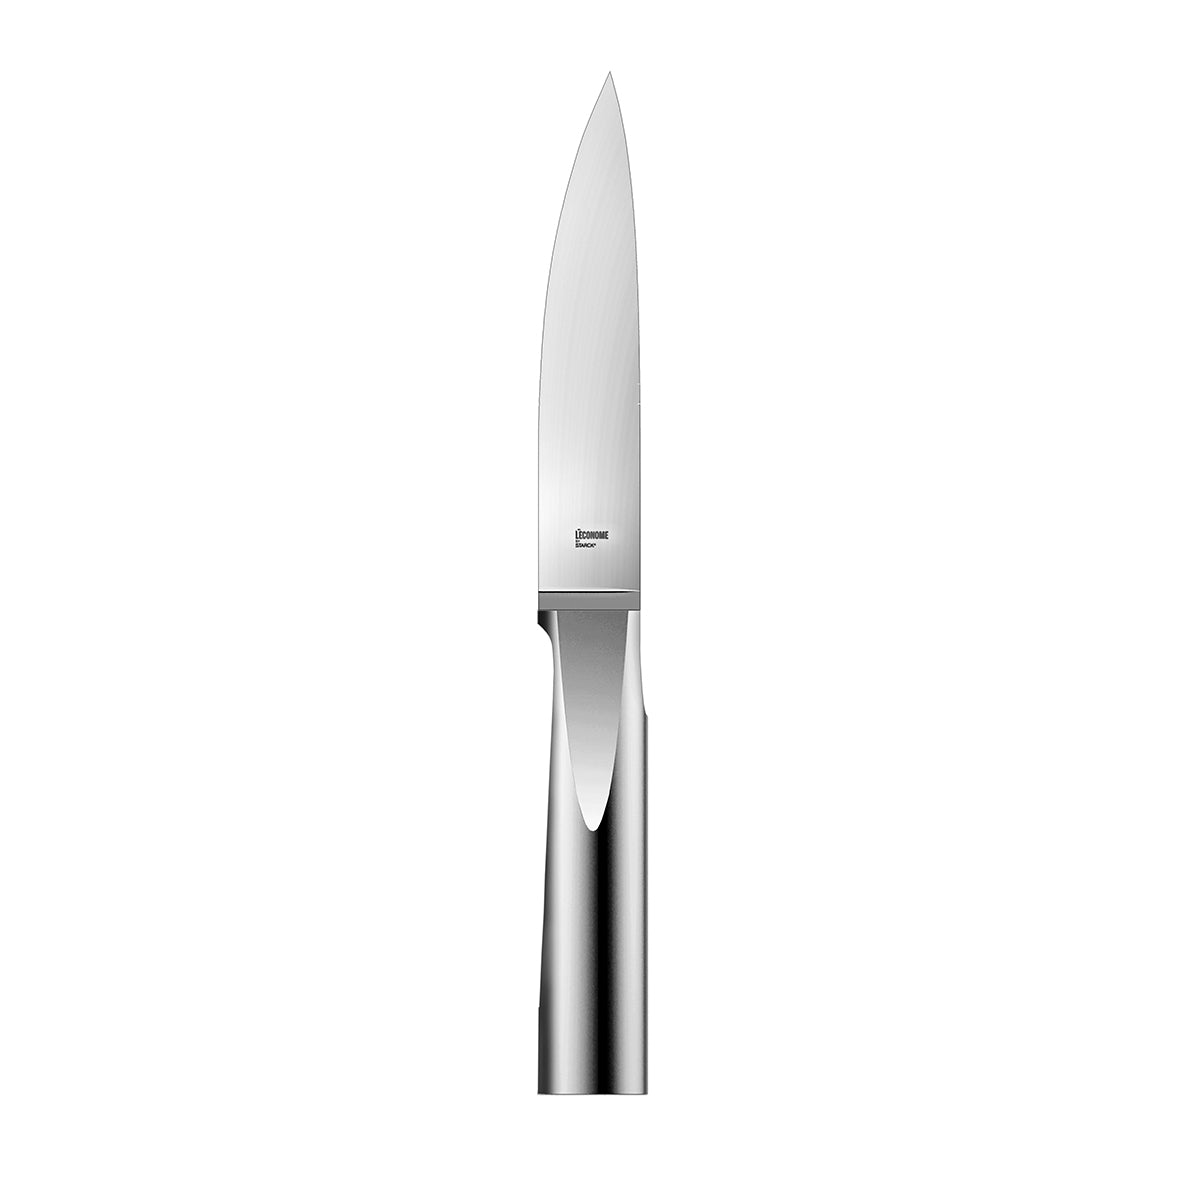 L'ECONOME STARCK Couteau de cuisine 20 cm – DEGRENNE